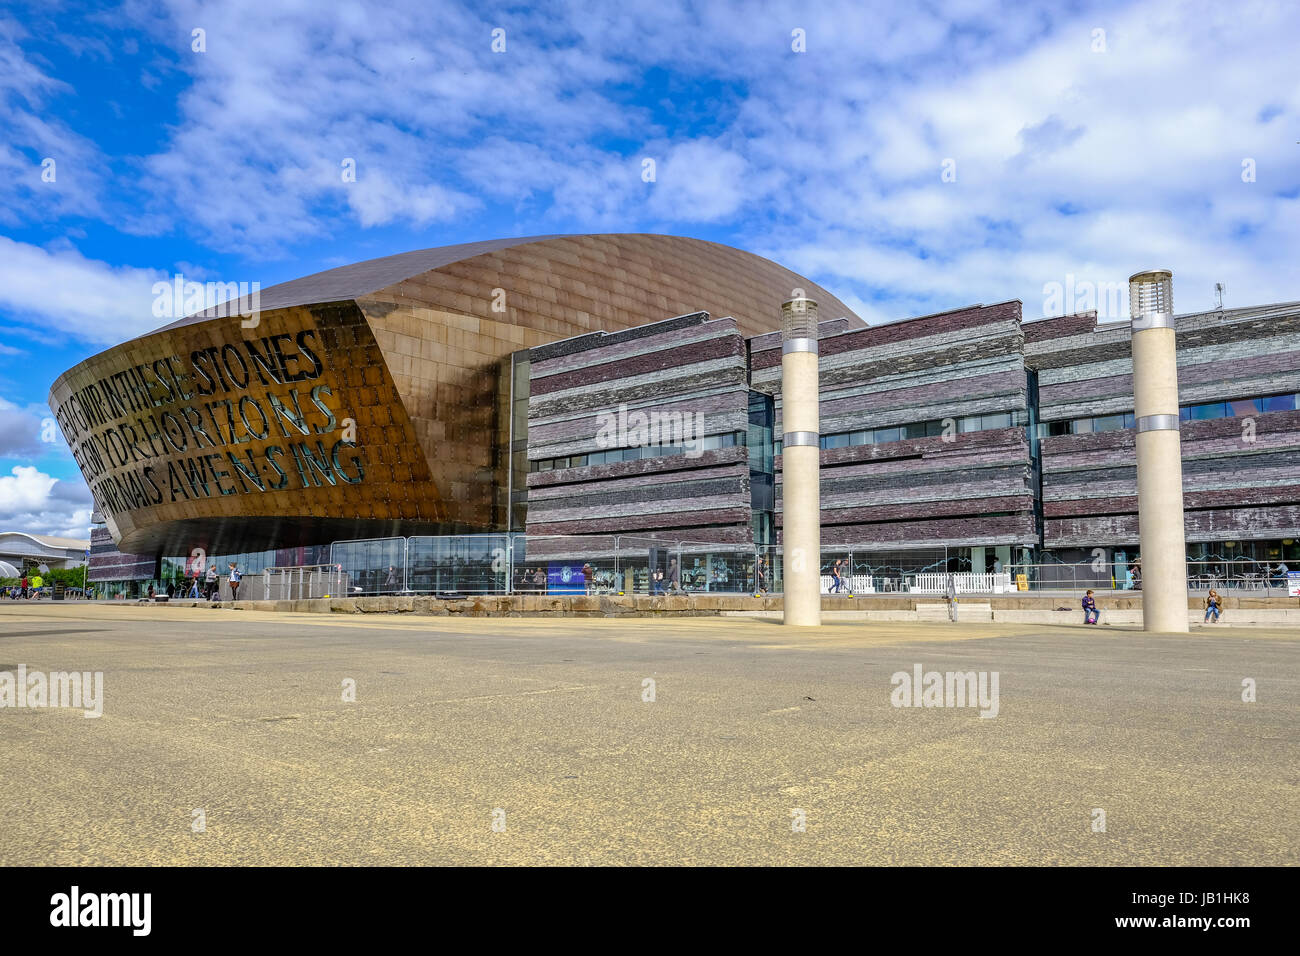 Bucht von Cardiff, Cardiff, Wales - 20. Mai 2017: Millennium Centre Gebäude mit Platz im Vordergrund. Stockfoto